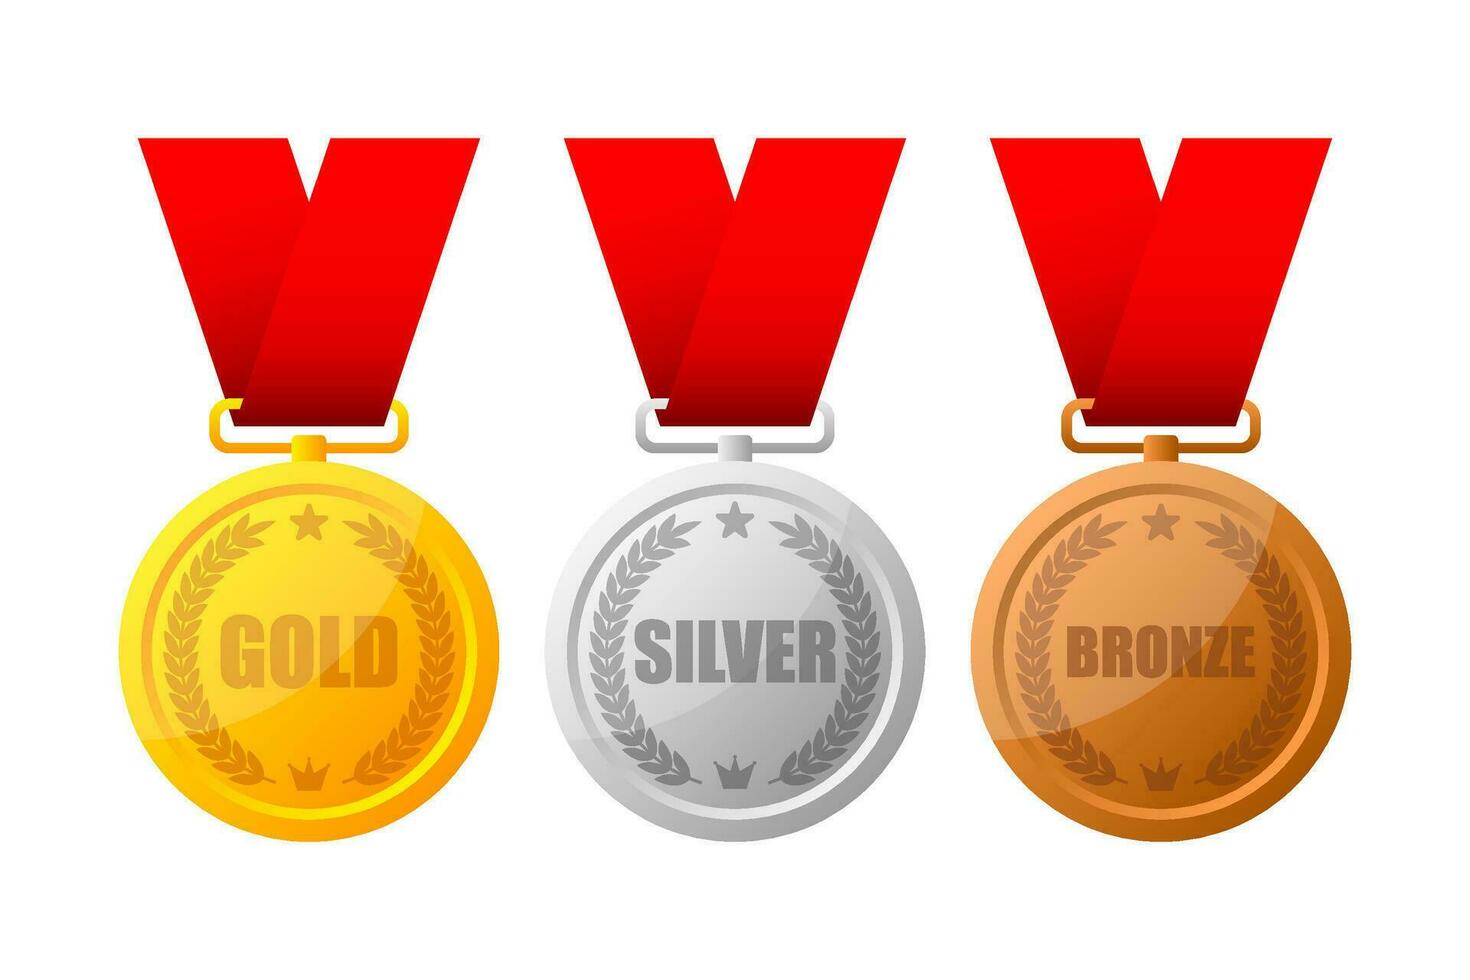 guld, silver- och brons medalj, mästare och vinnare utmärkelser - 1:a, 2:a och 3:e plats utmärkelser uppsättning. vektor